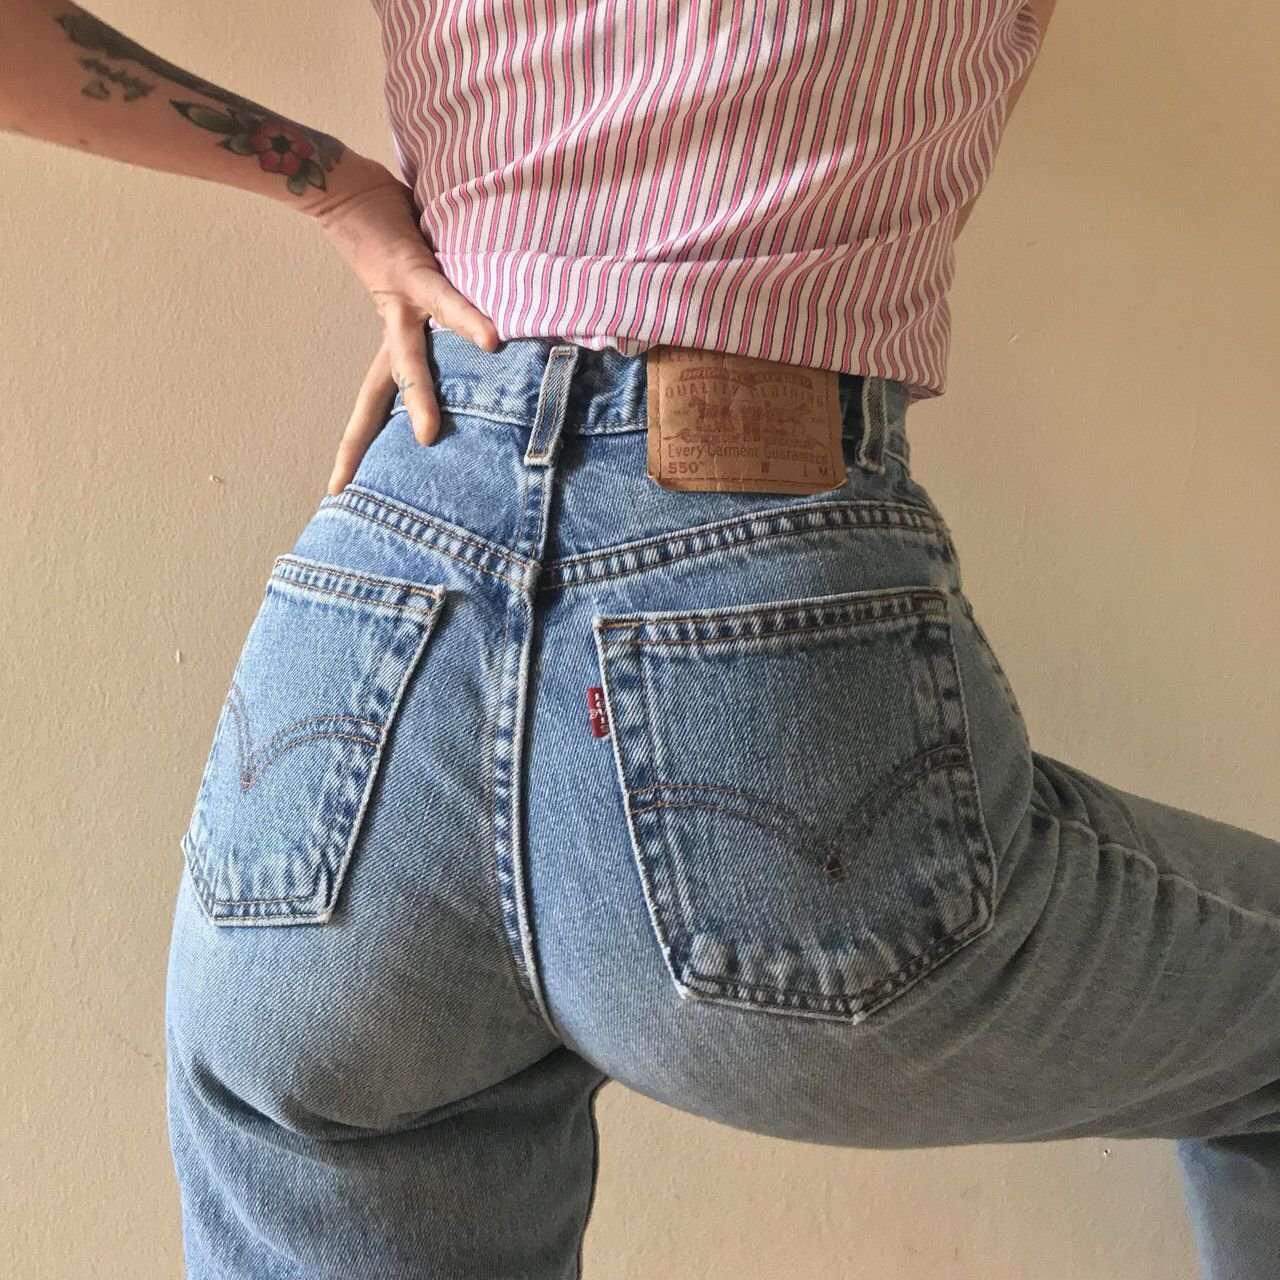 жопы девушек в обтягивающих джинсах фото 119